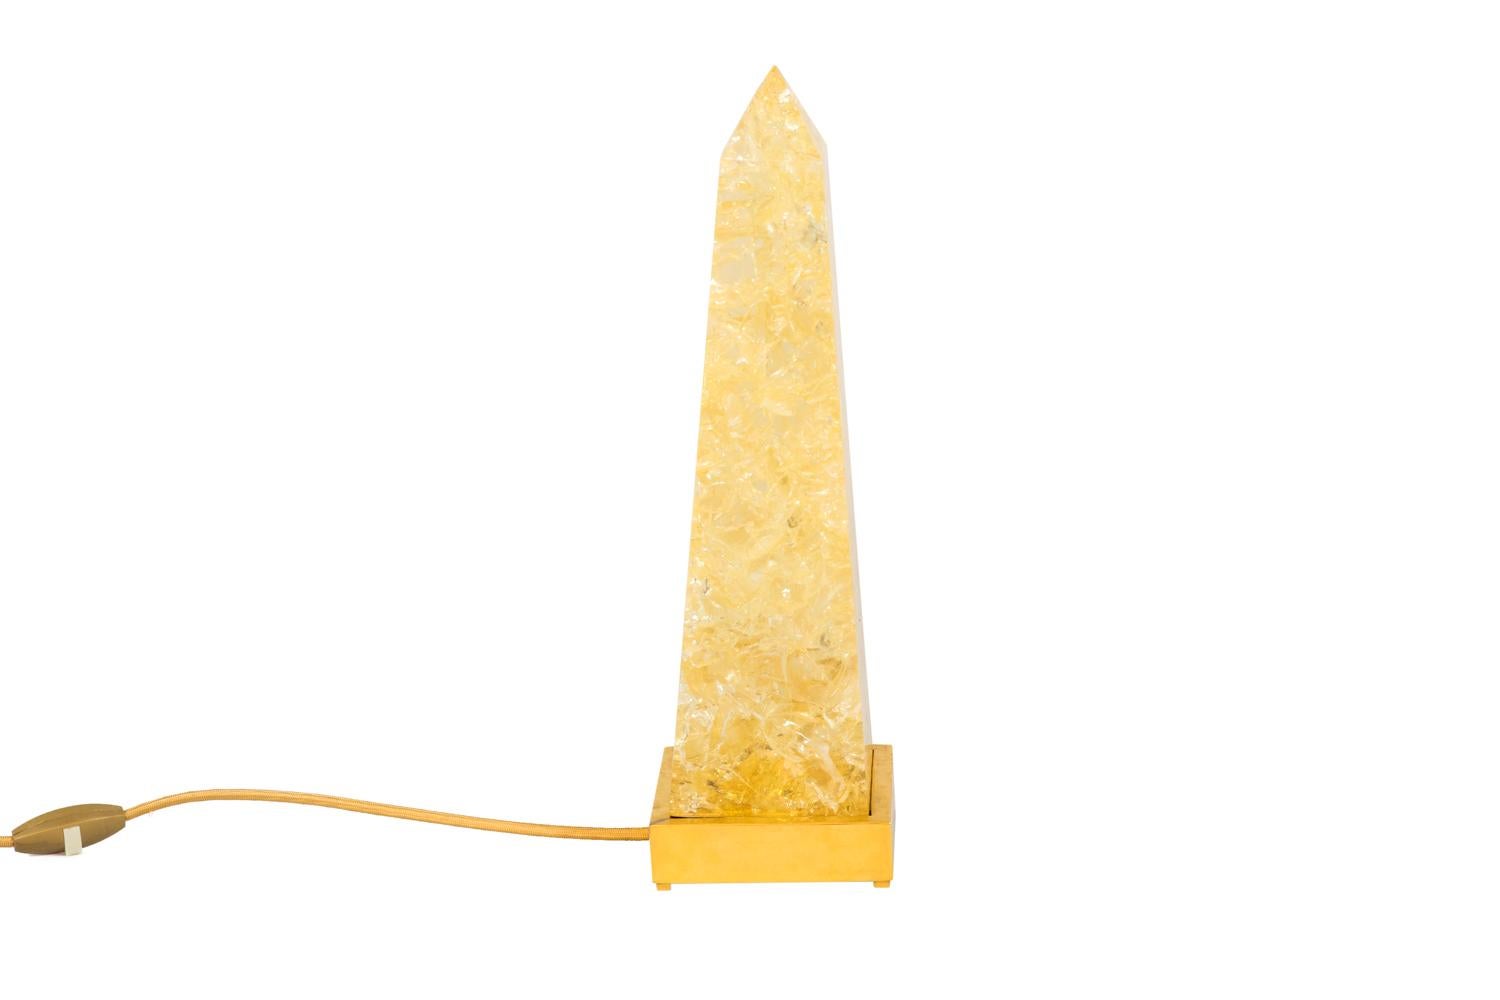 Pierre Giraudon, dem zugeschrieben wird.
Obelisk-Lampe aus fraktalem Harz auf einem quadratischen Sockel aus vergoldetem Messing.

Das Werk wurde in den 1970er Jahren realisiert.

Neue und funktionsfähige elektrische Anlage.

Pierre Giraudon